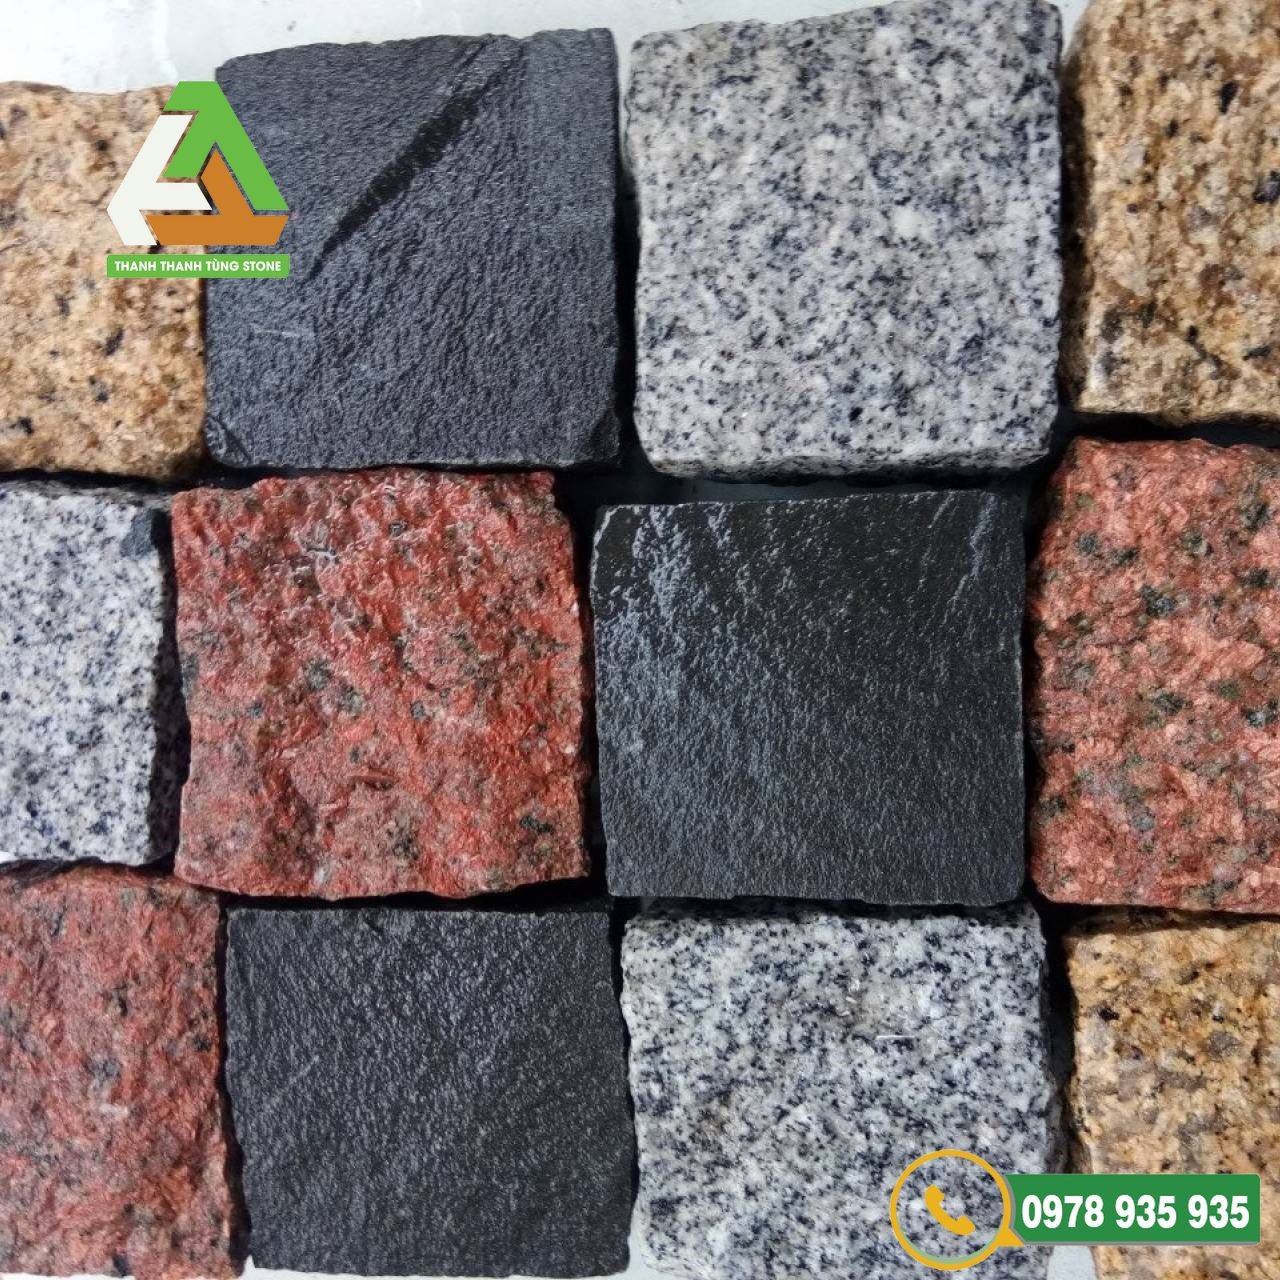 Giá đá cubic granite có đắt hơn đá cubic bazan đen không?
